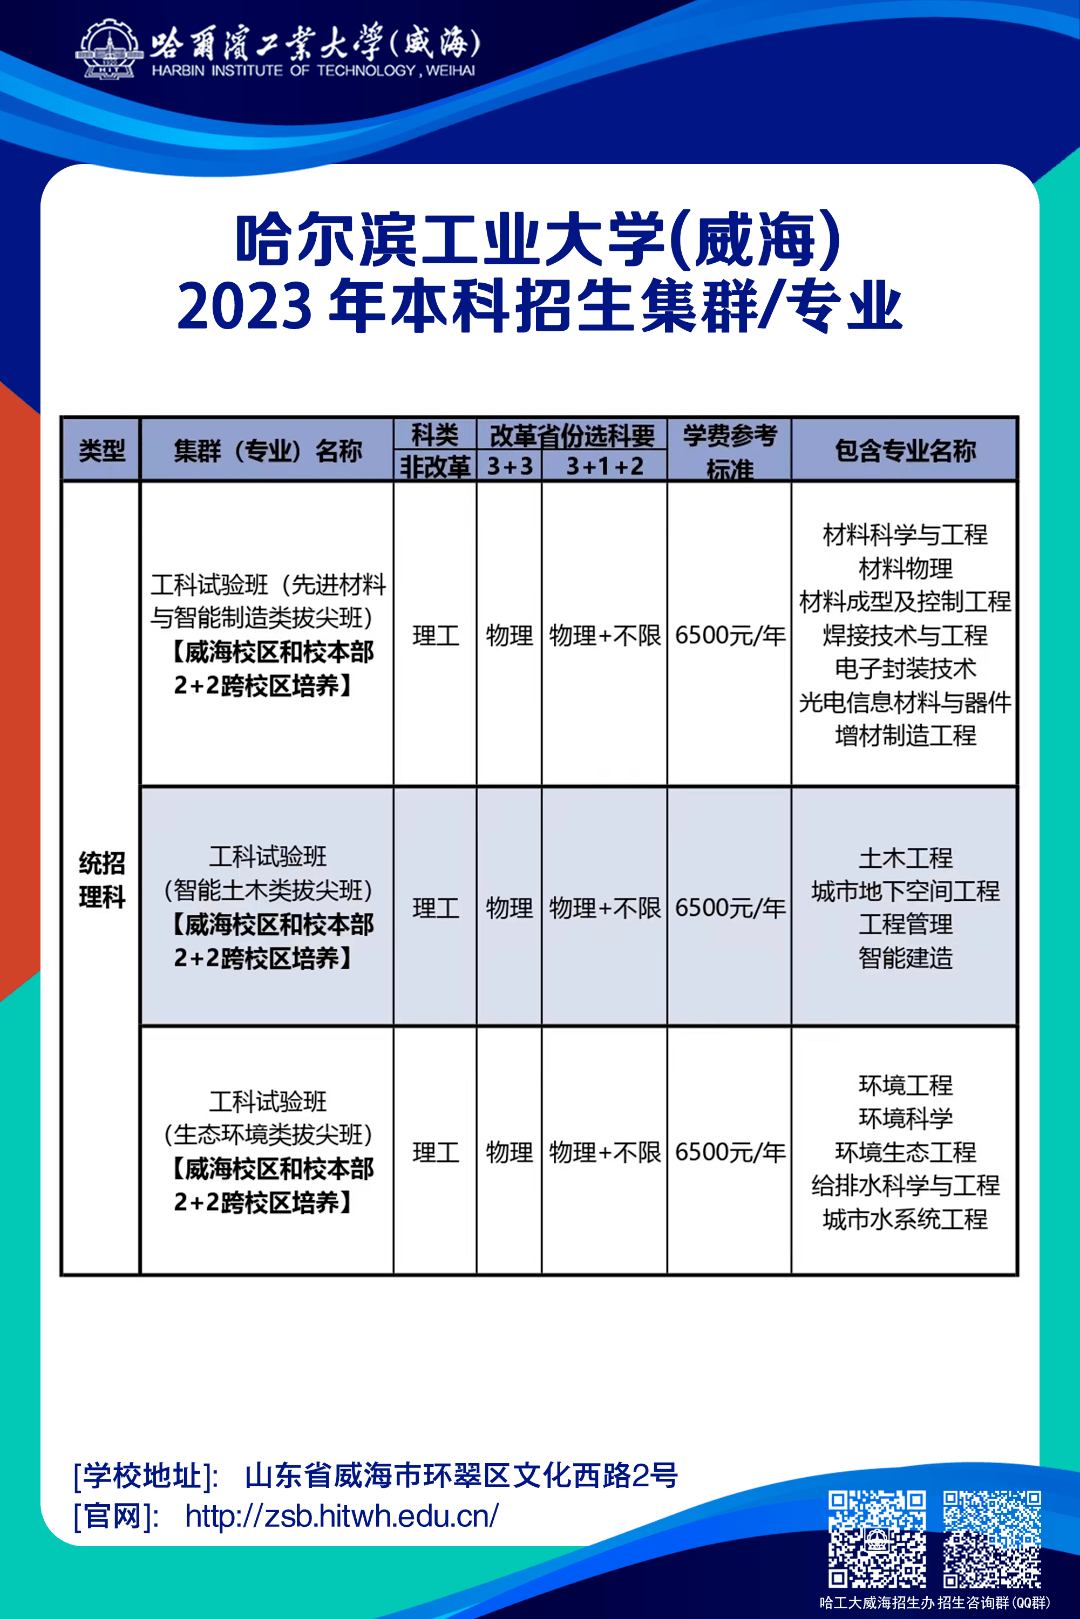 哈尔滨工业大学(威海)2023年招生计划公布!